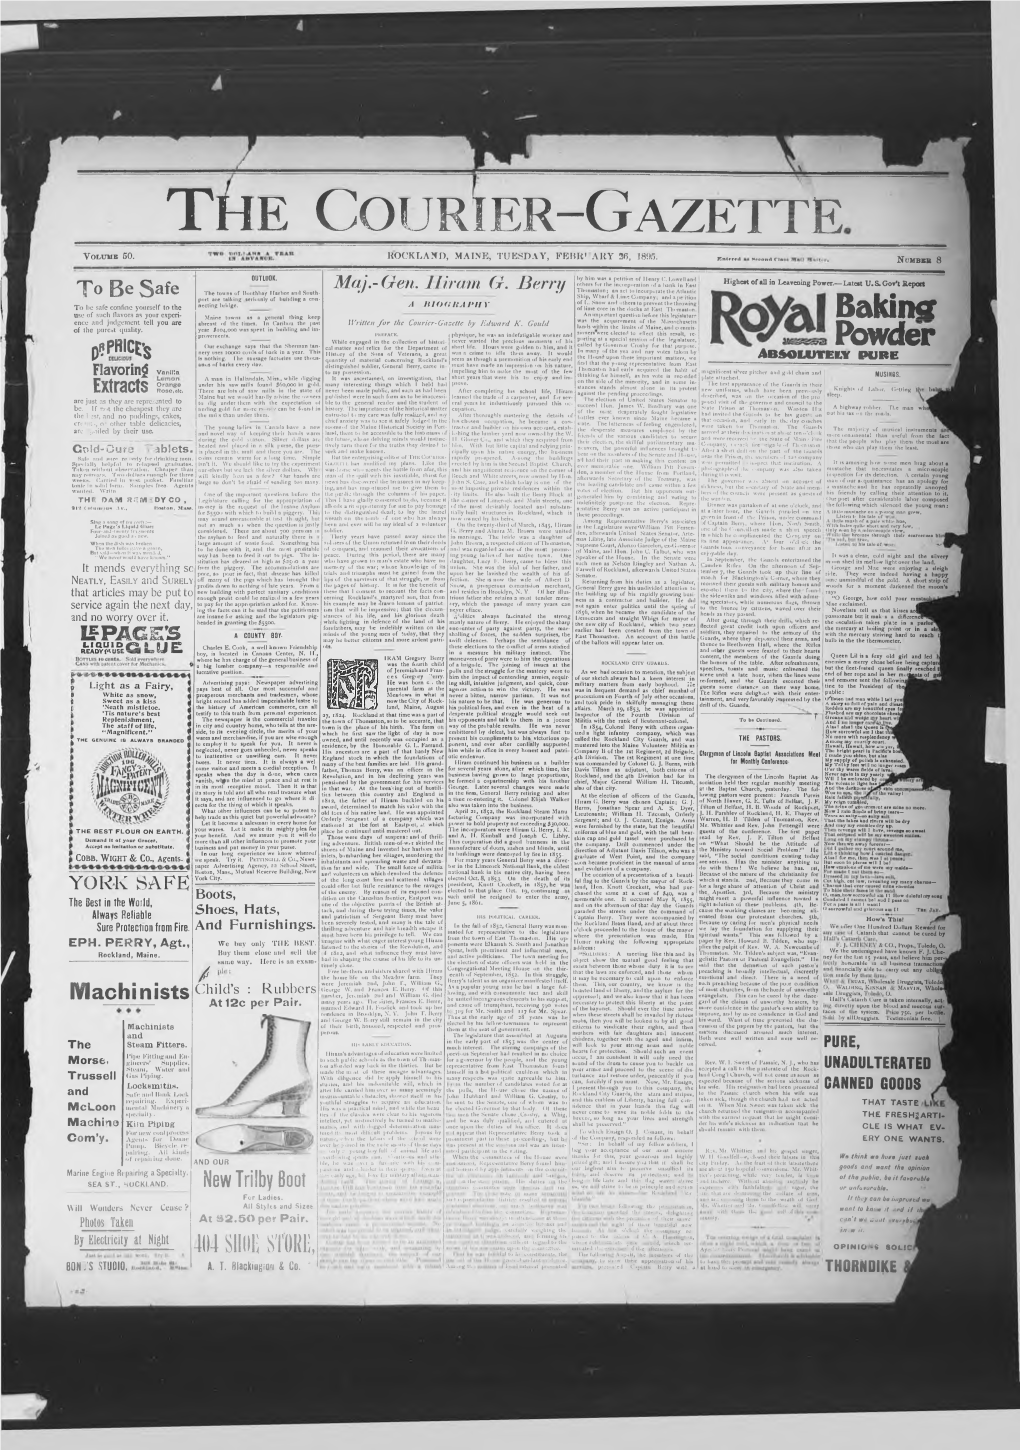 Courier Gazette, Tuesday February 26, 1896